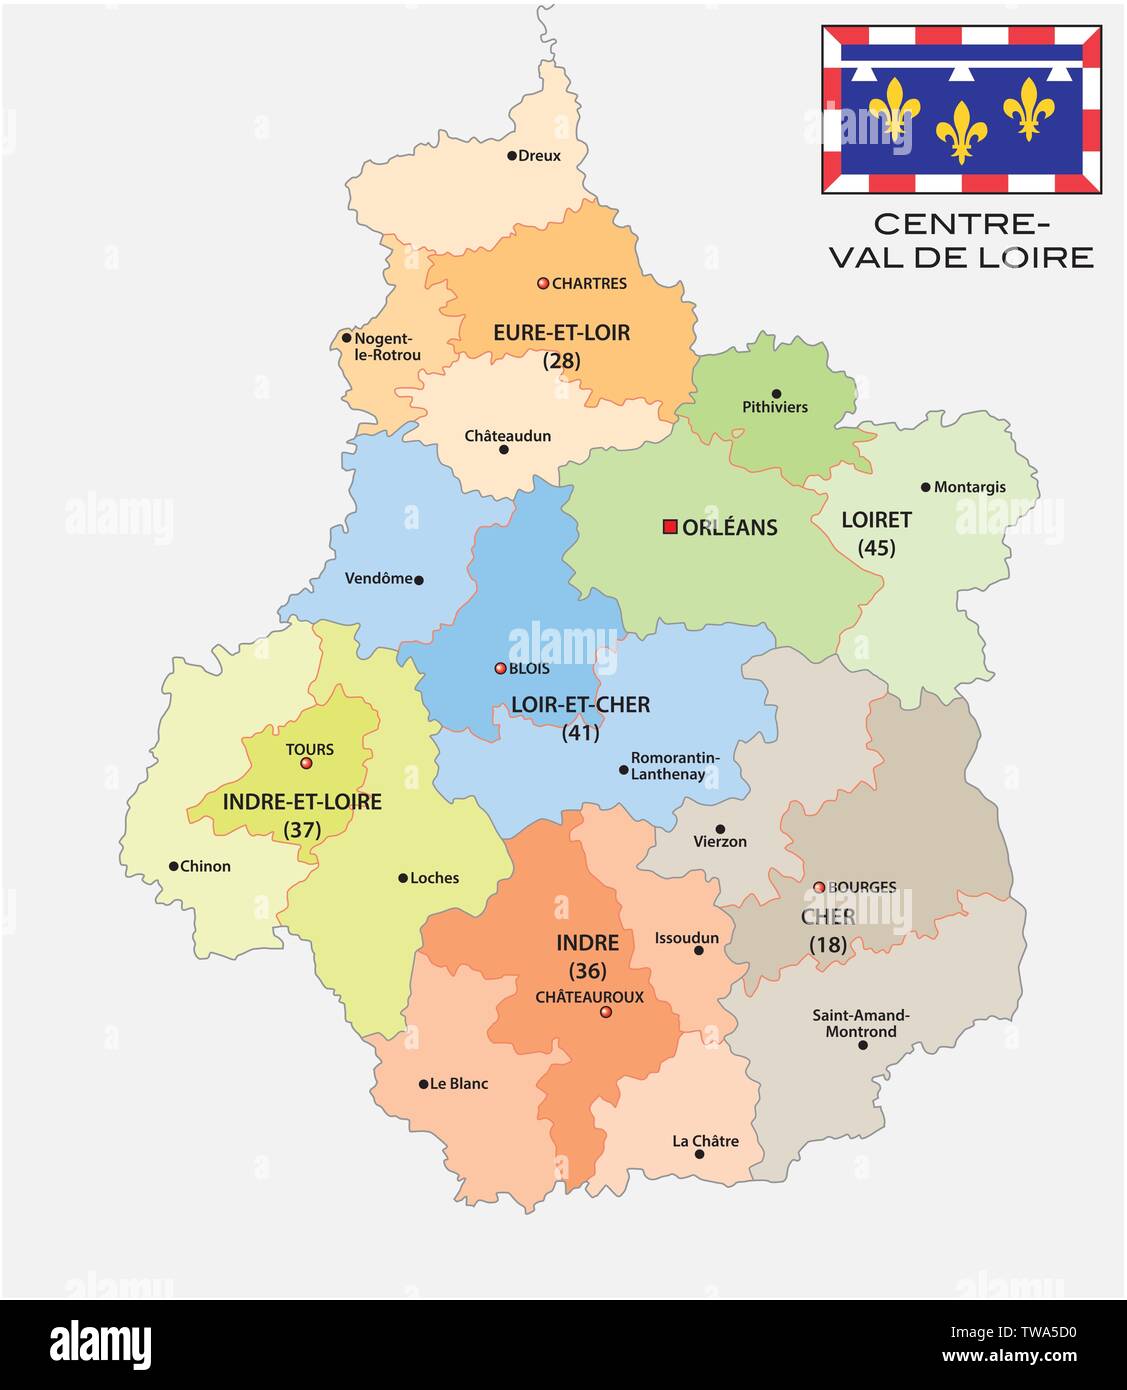 La carte administrative et politique de la région Centre Val de Loire avec  drapeau france Image Vectorielle Stock - Alamy